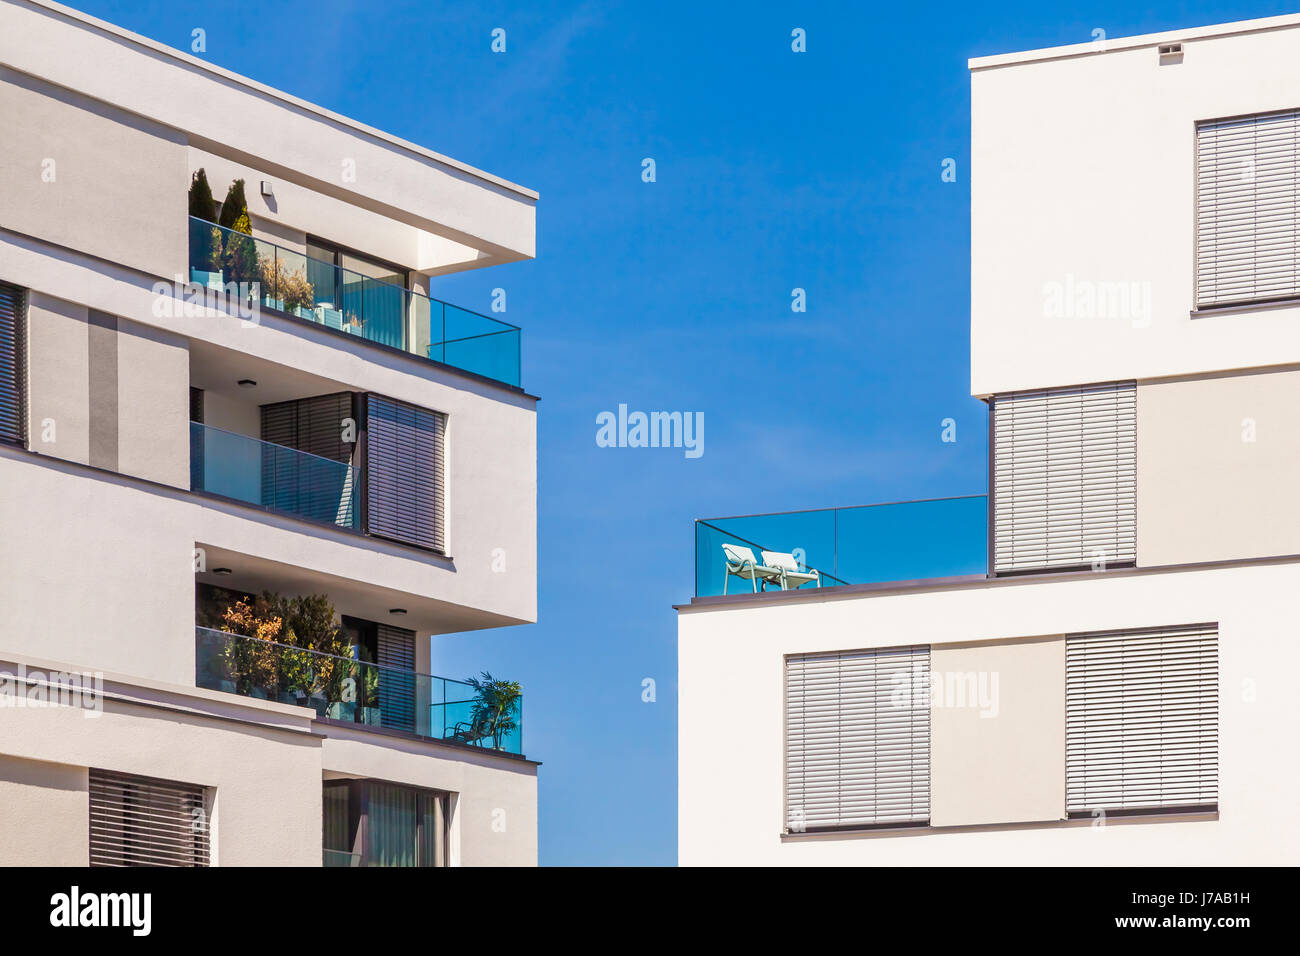 Deutschland, Bayern, Neu-Ulm, moderne Mehrfamilienhäuser, Wohnungen, Neubau, moderne Architektur, Balkon, Stühle Stock Photo